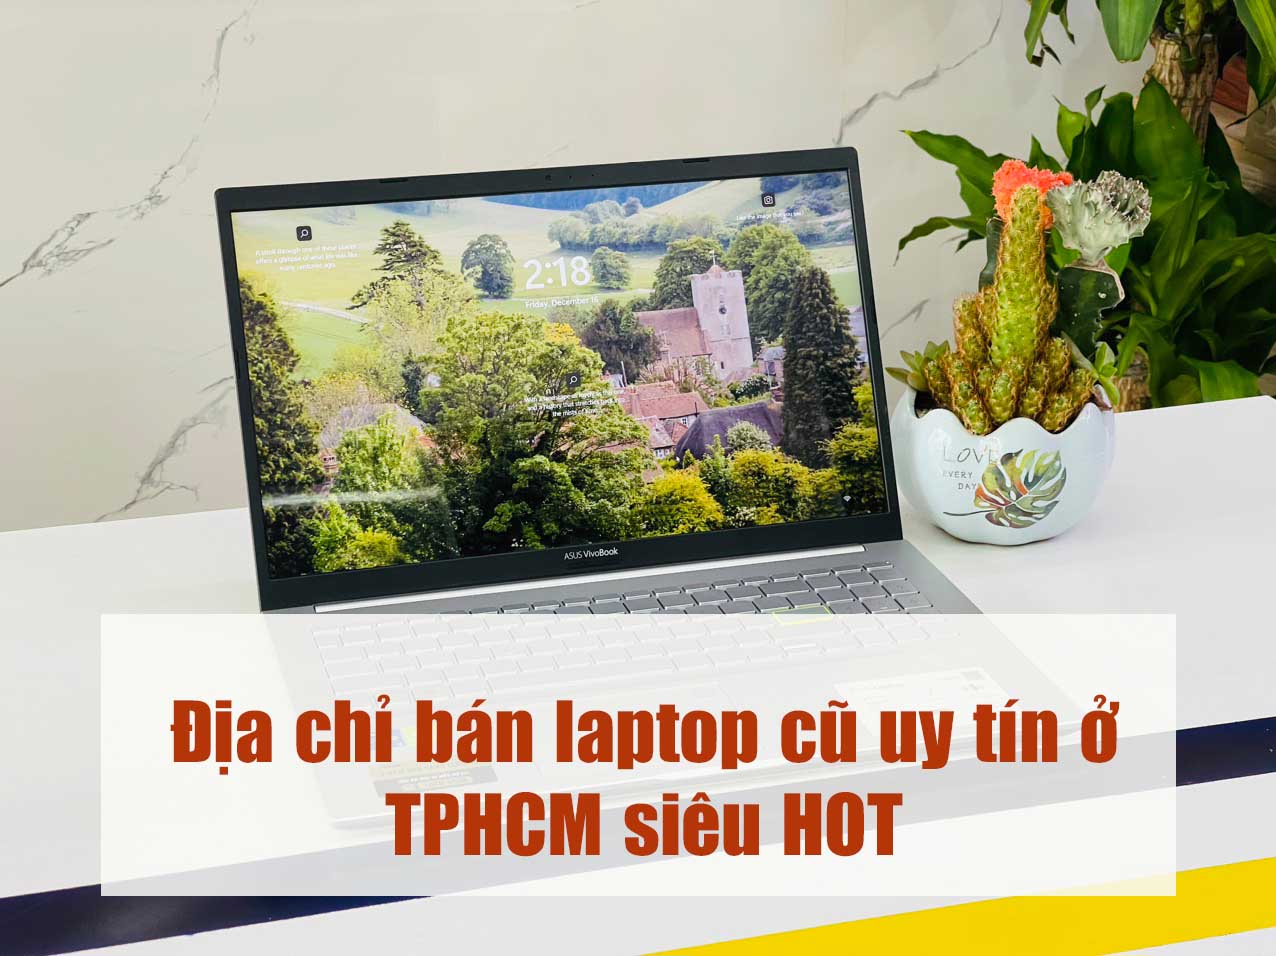 Mục sở thị địa chỉ bán laptop cũ uy tín TPHCM siêu HOT cho khách hàng